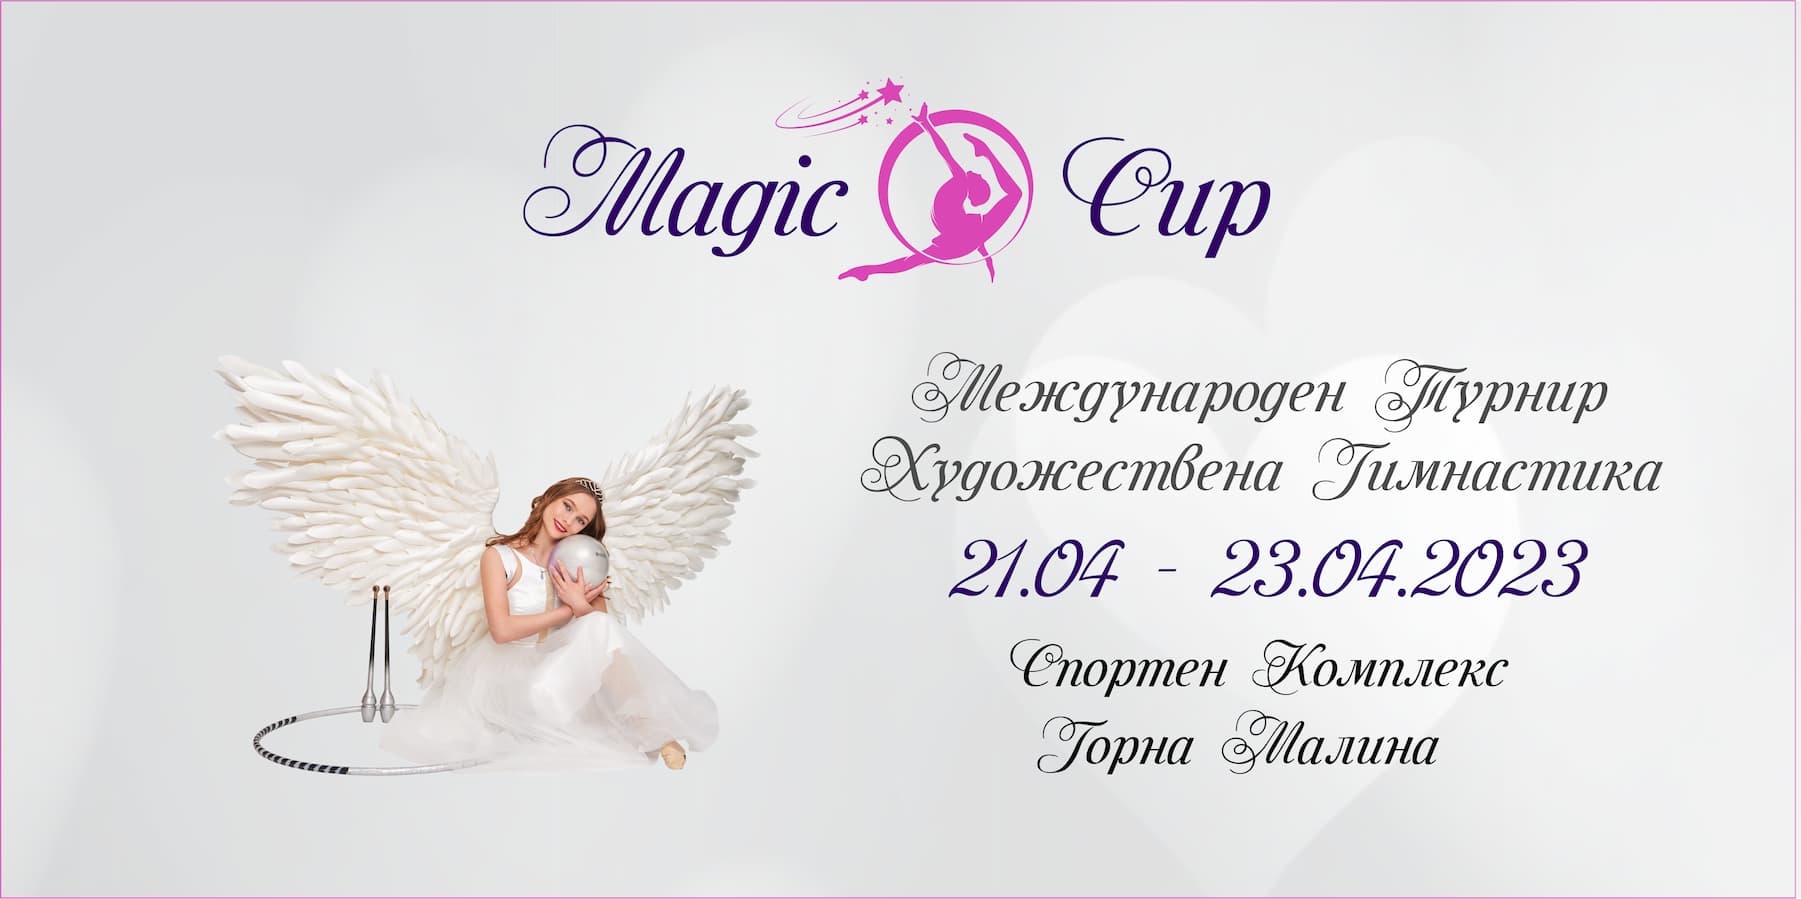 Magic cup - Fundació Els Joncs